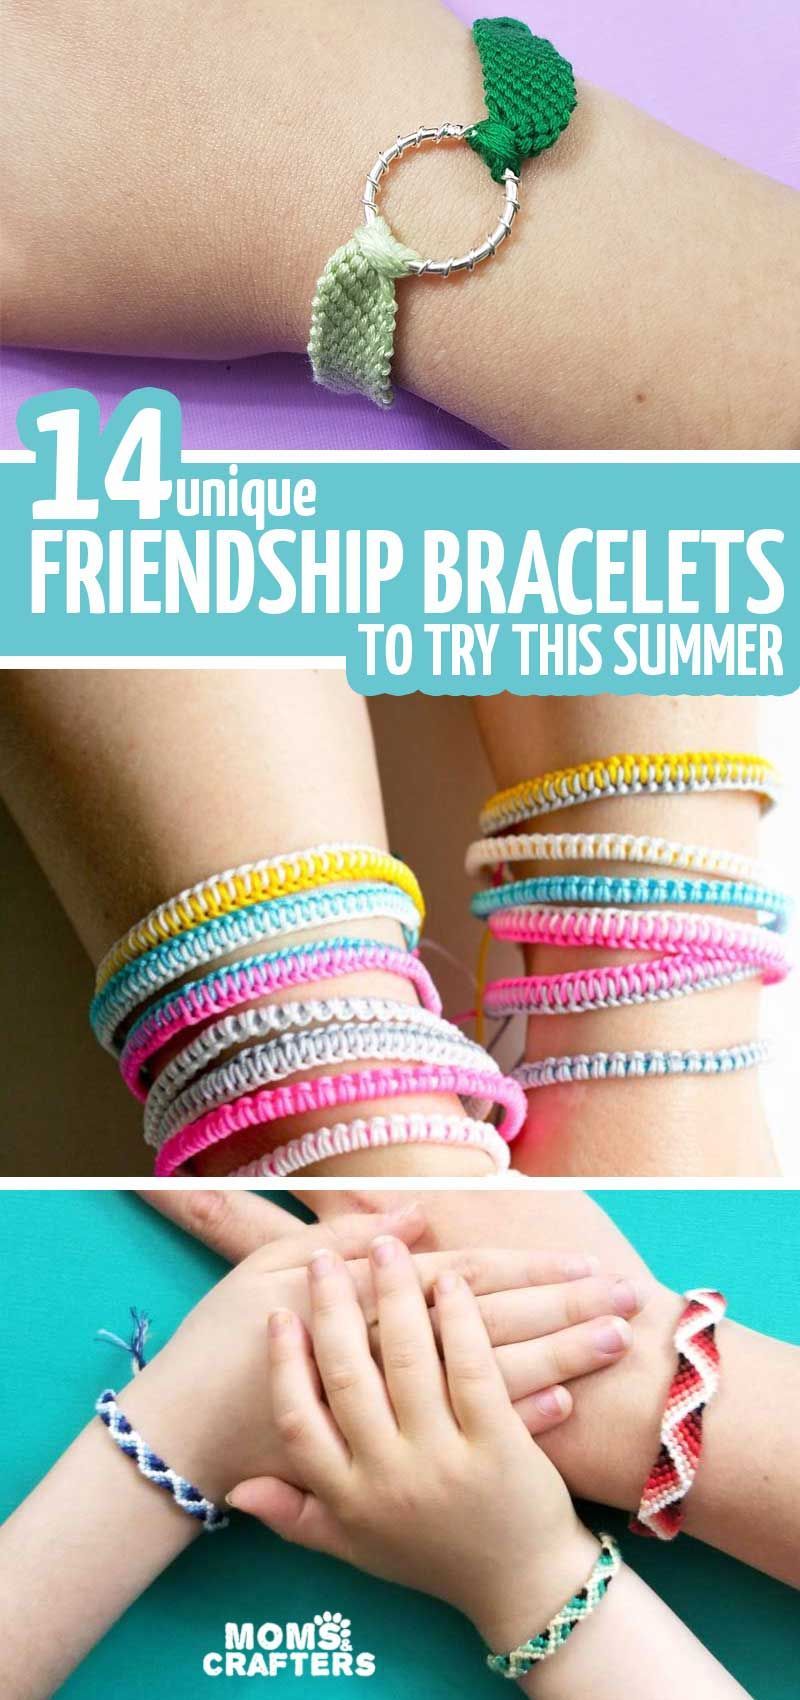 15 diy Bracelets easy ideas